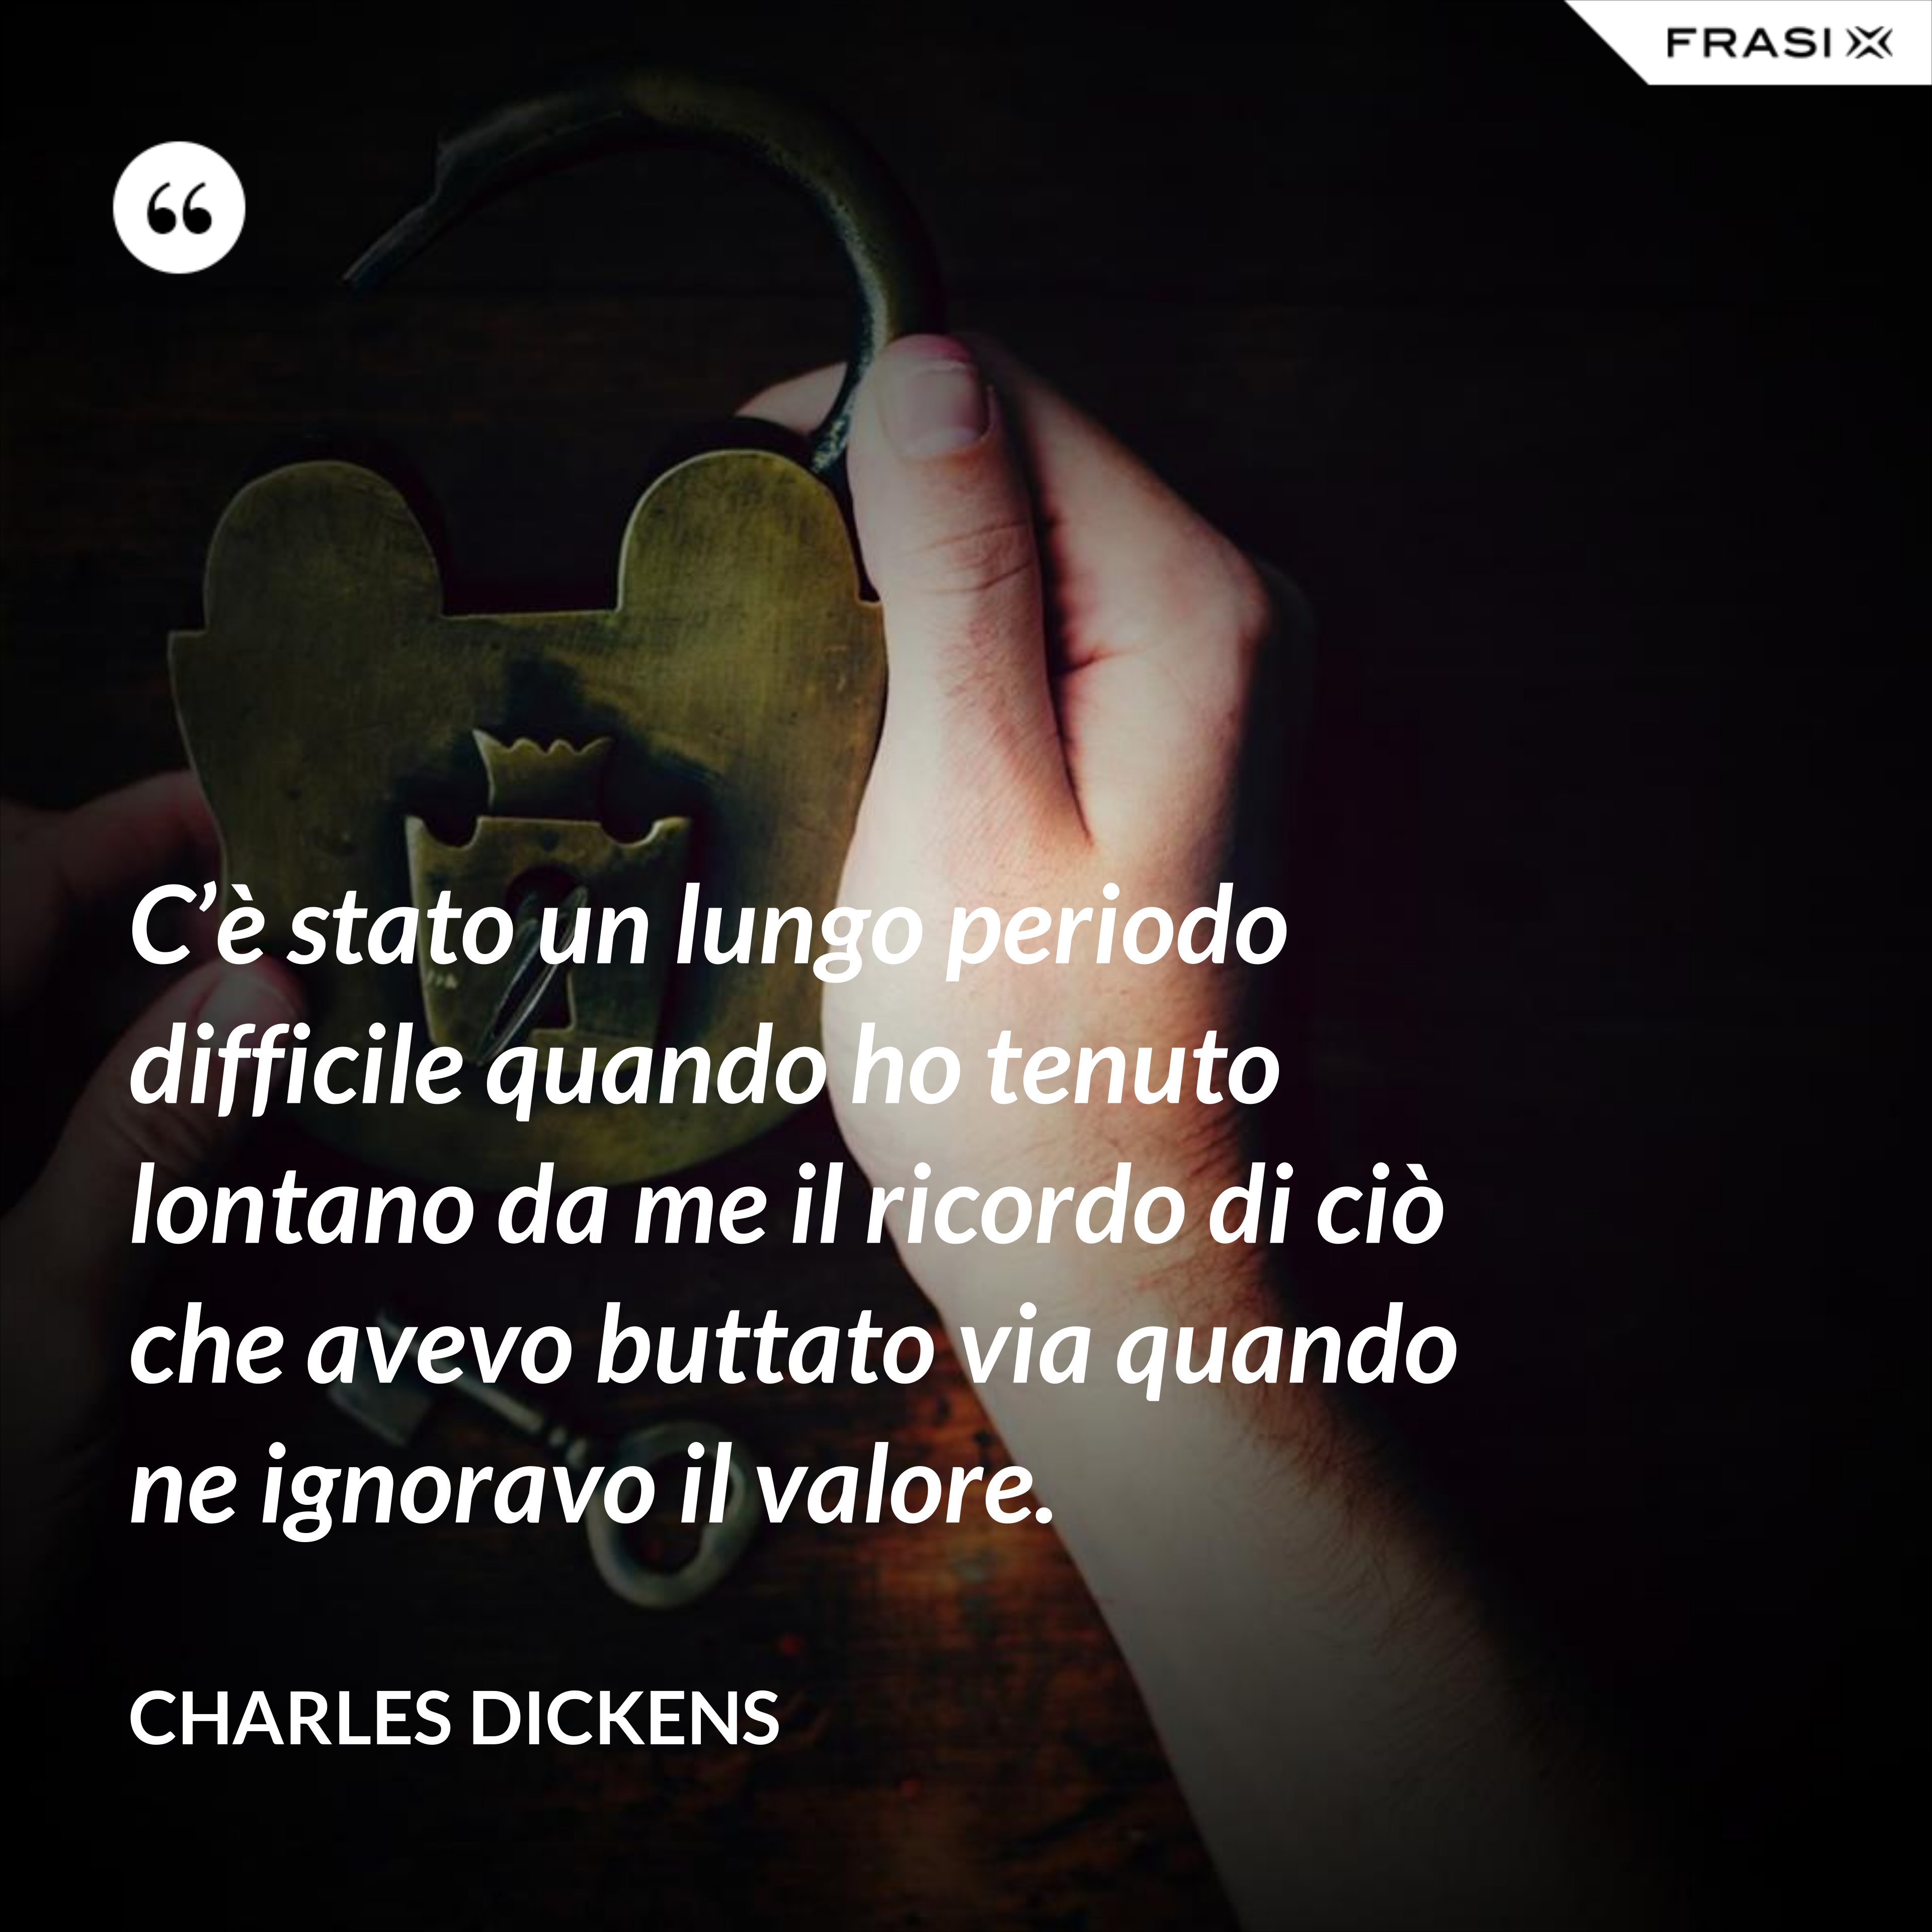 C’è stato un lungo periodo difficile quando ho tenuto lontano da me il ricordo di ciò che avevo buttato via quando ne ignoravo il valore. - Charles Dickens